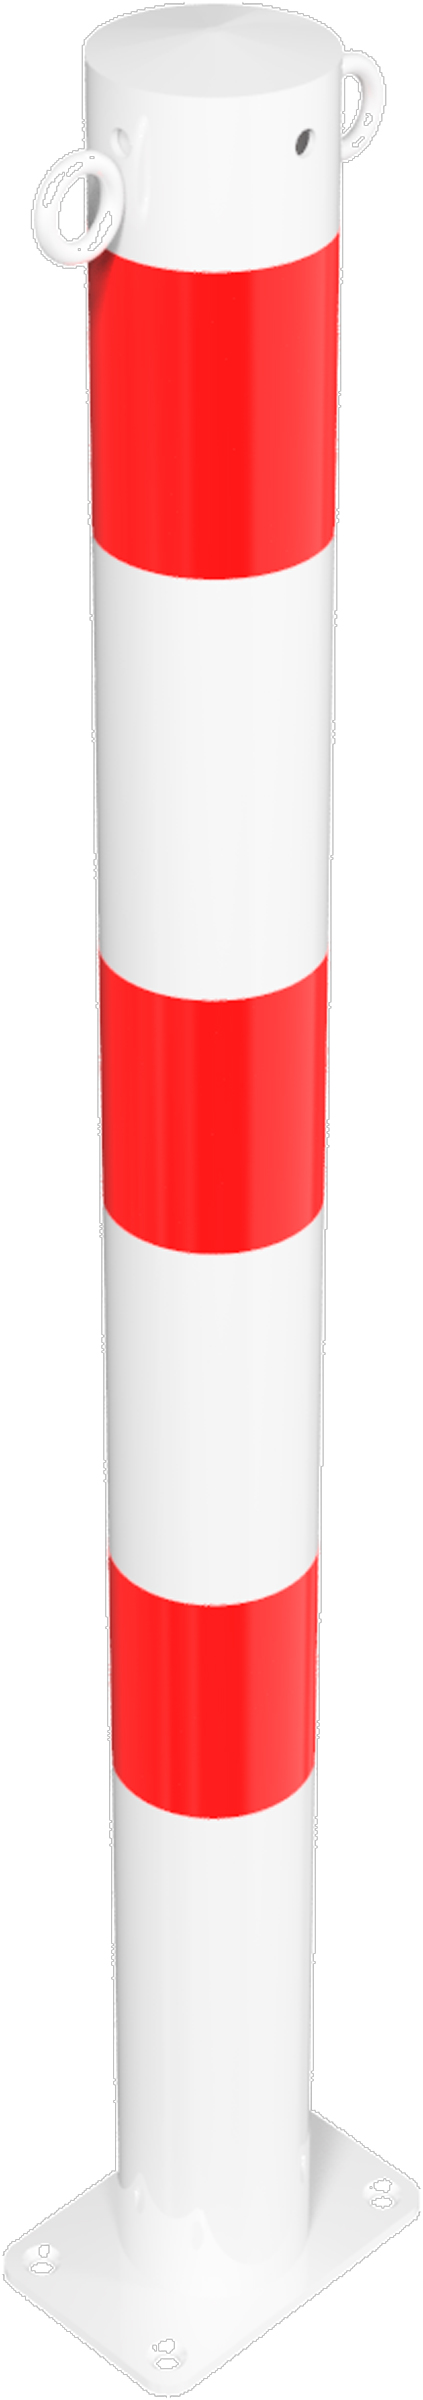 Schake Absperrpfosten OD Ø 76 mm mit 2 Ösen weiß | rot